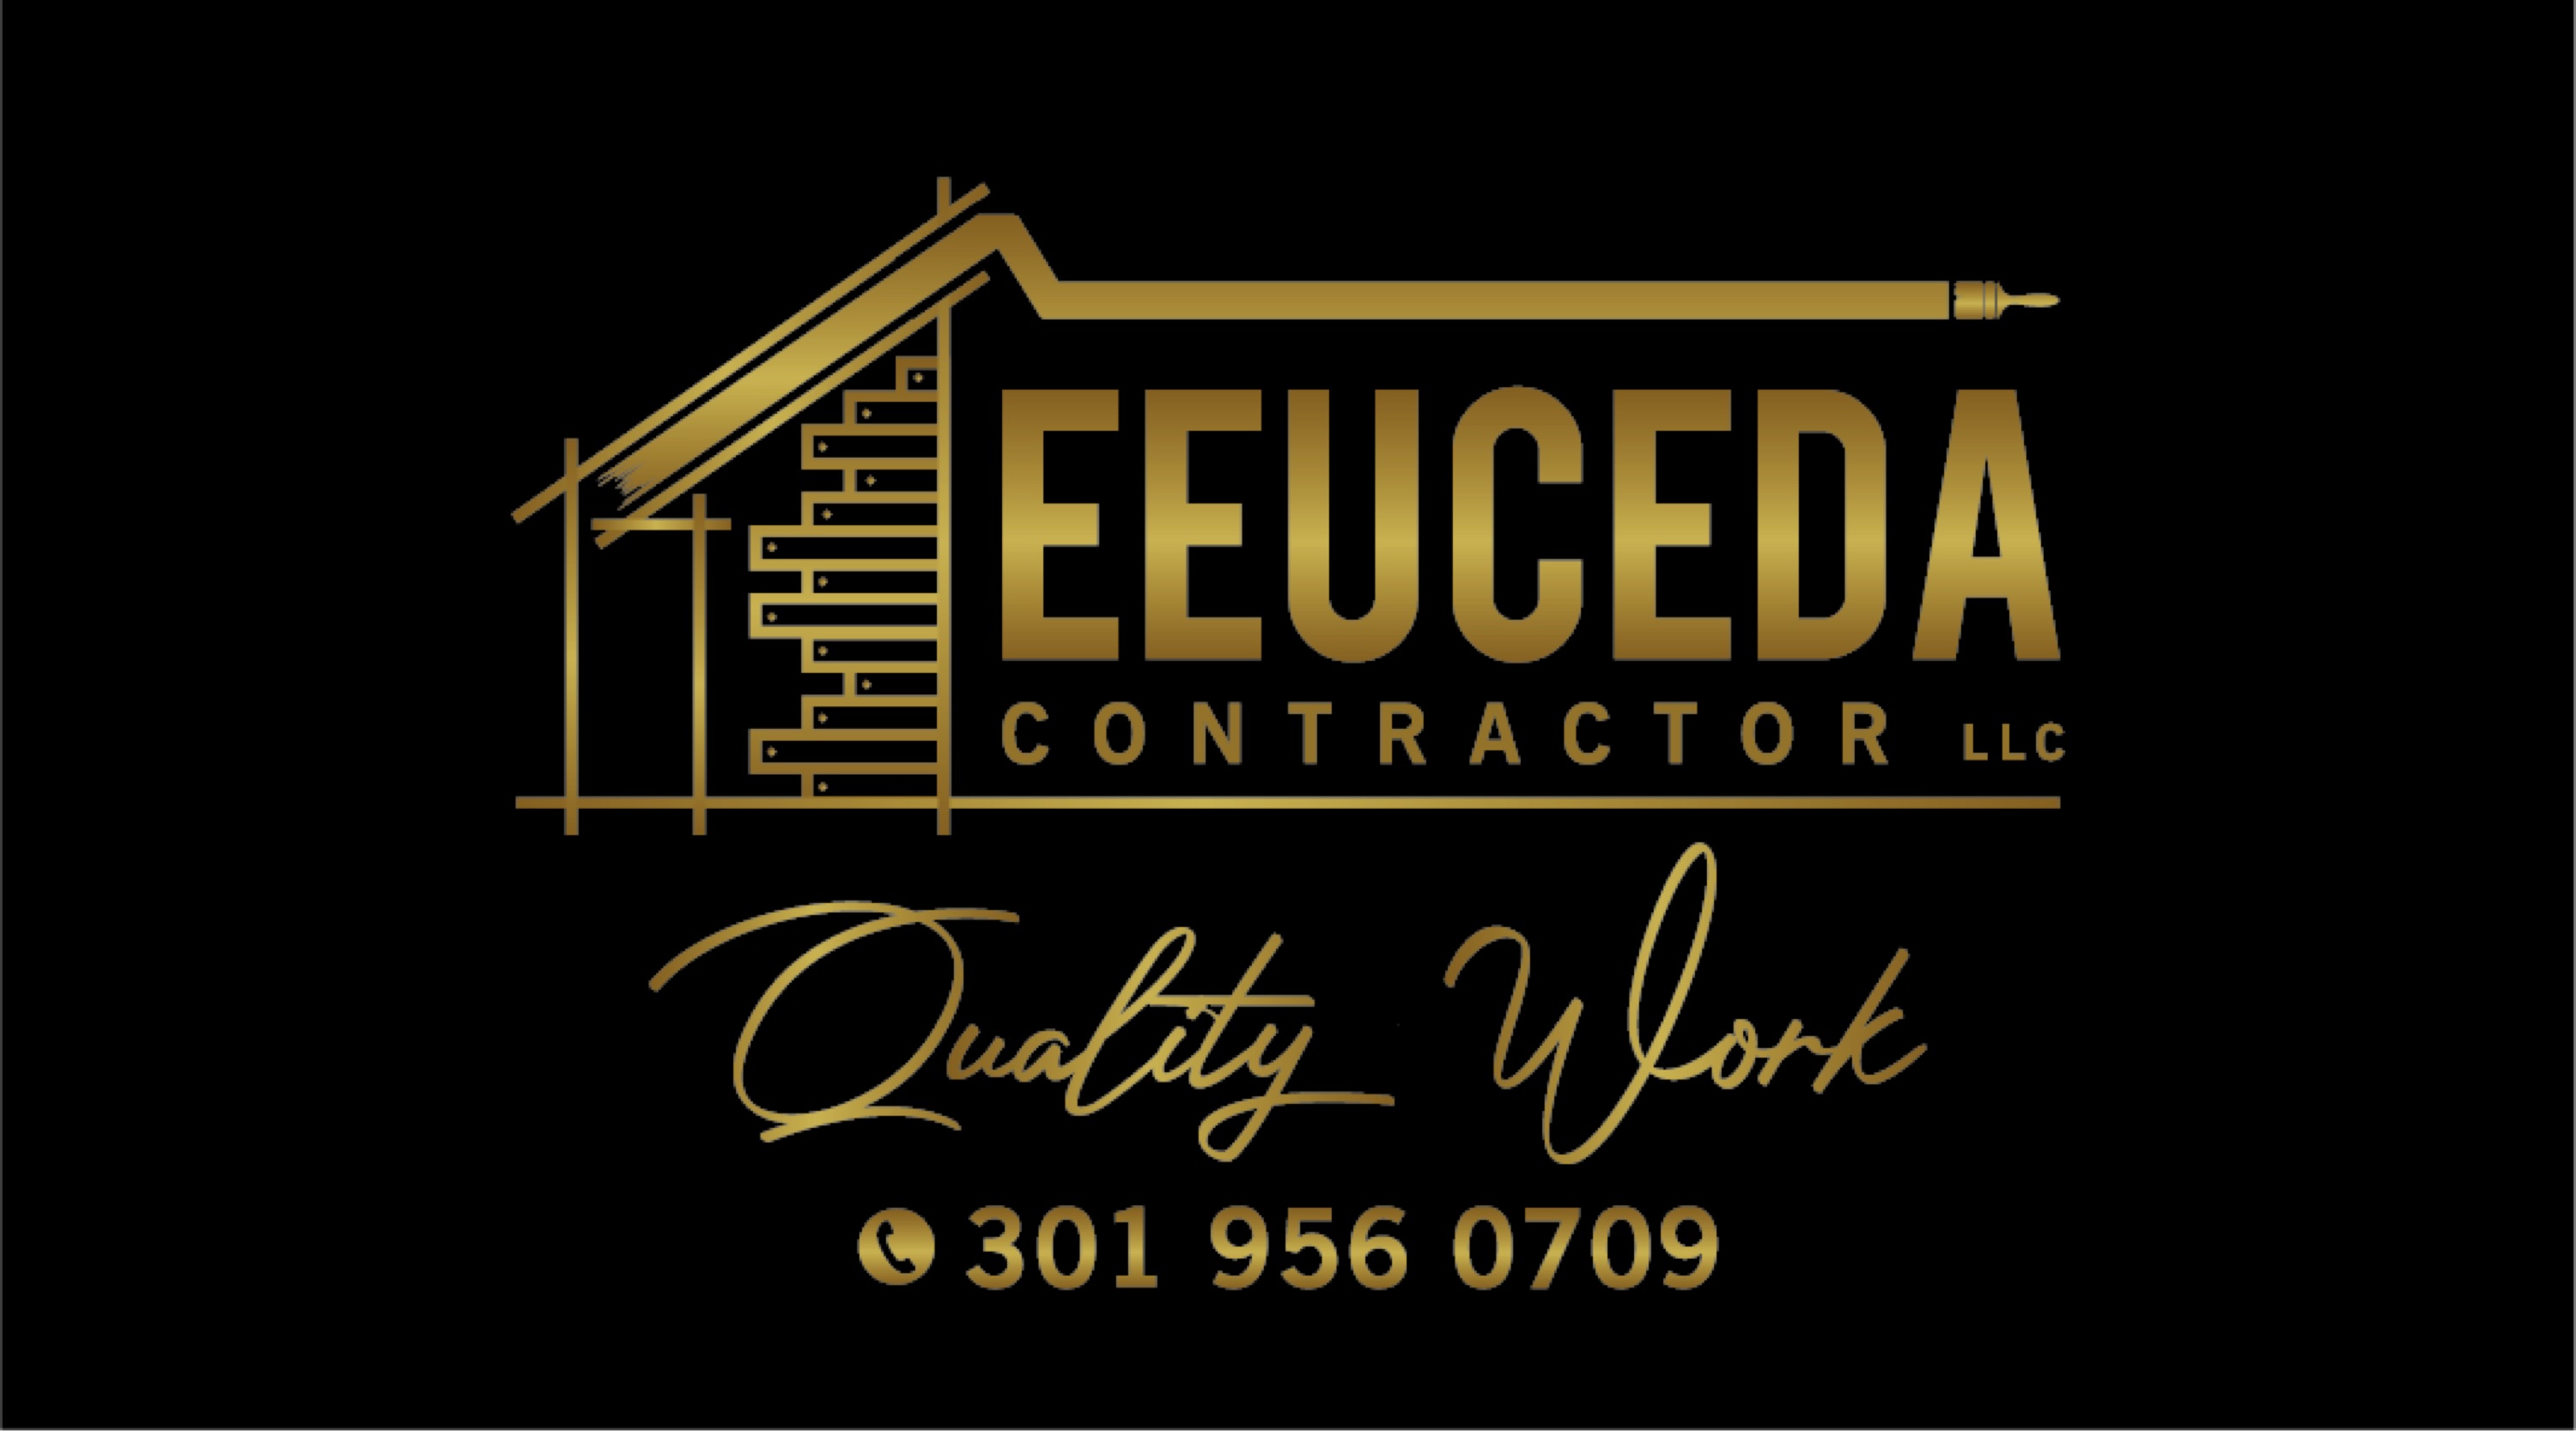 Eeuceda Contractor, LLC Logo